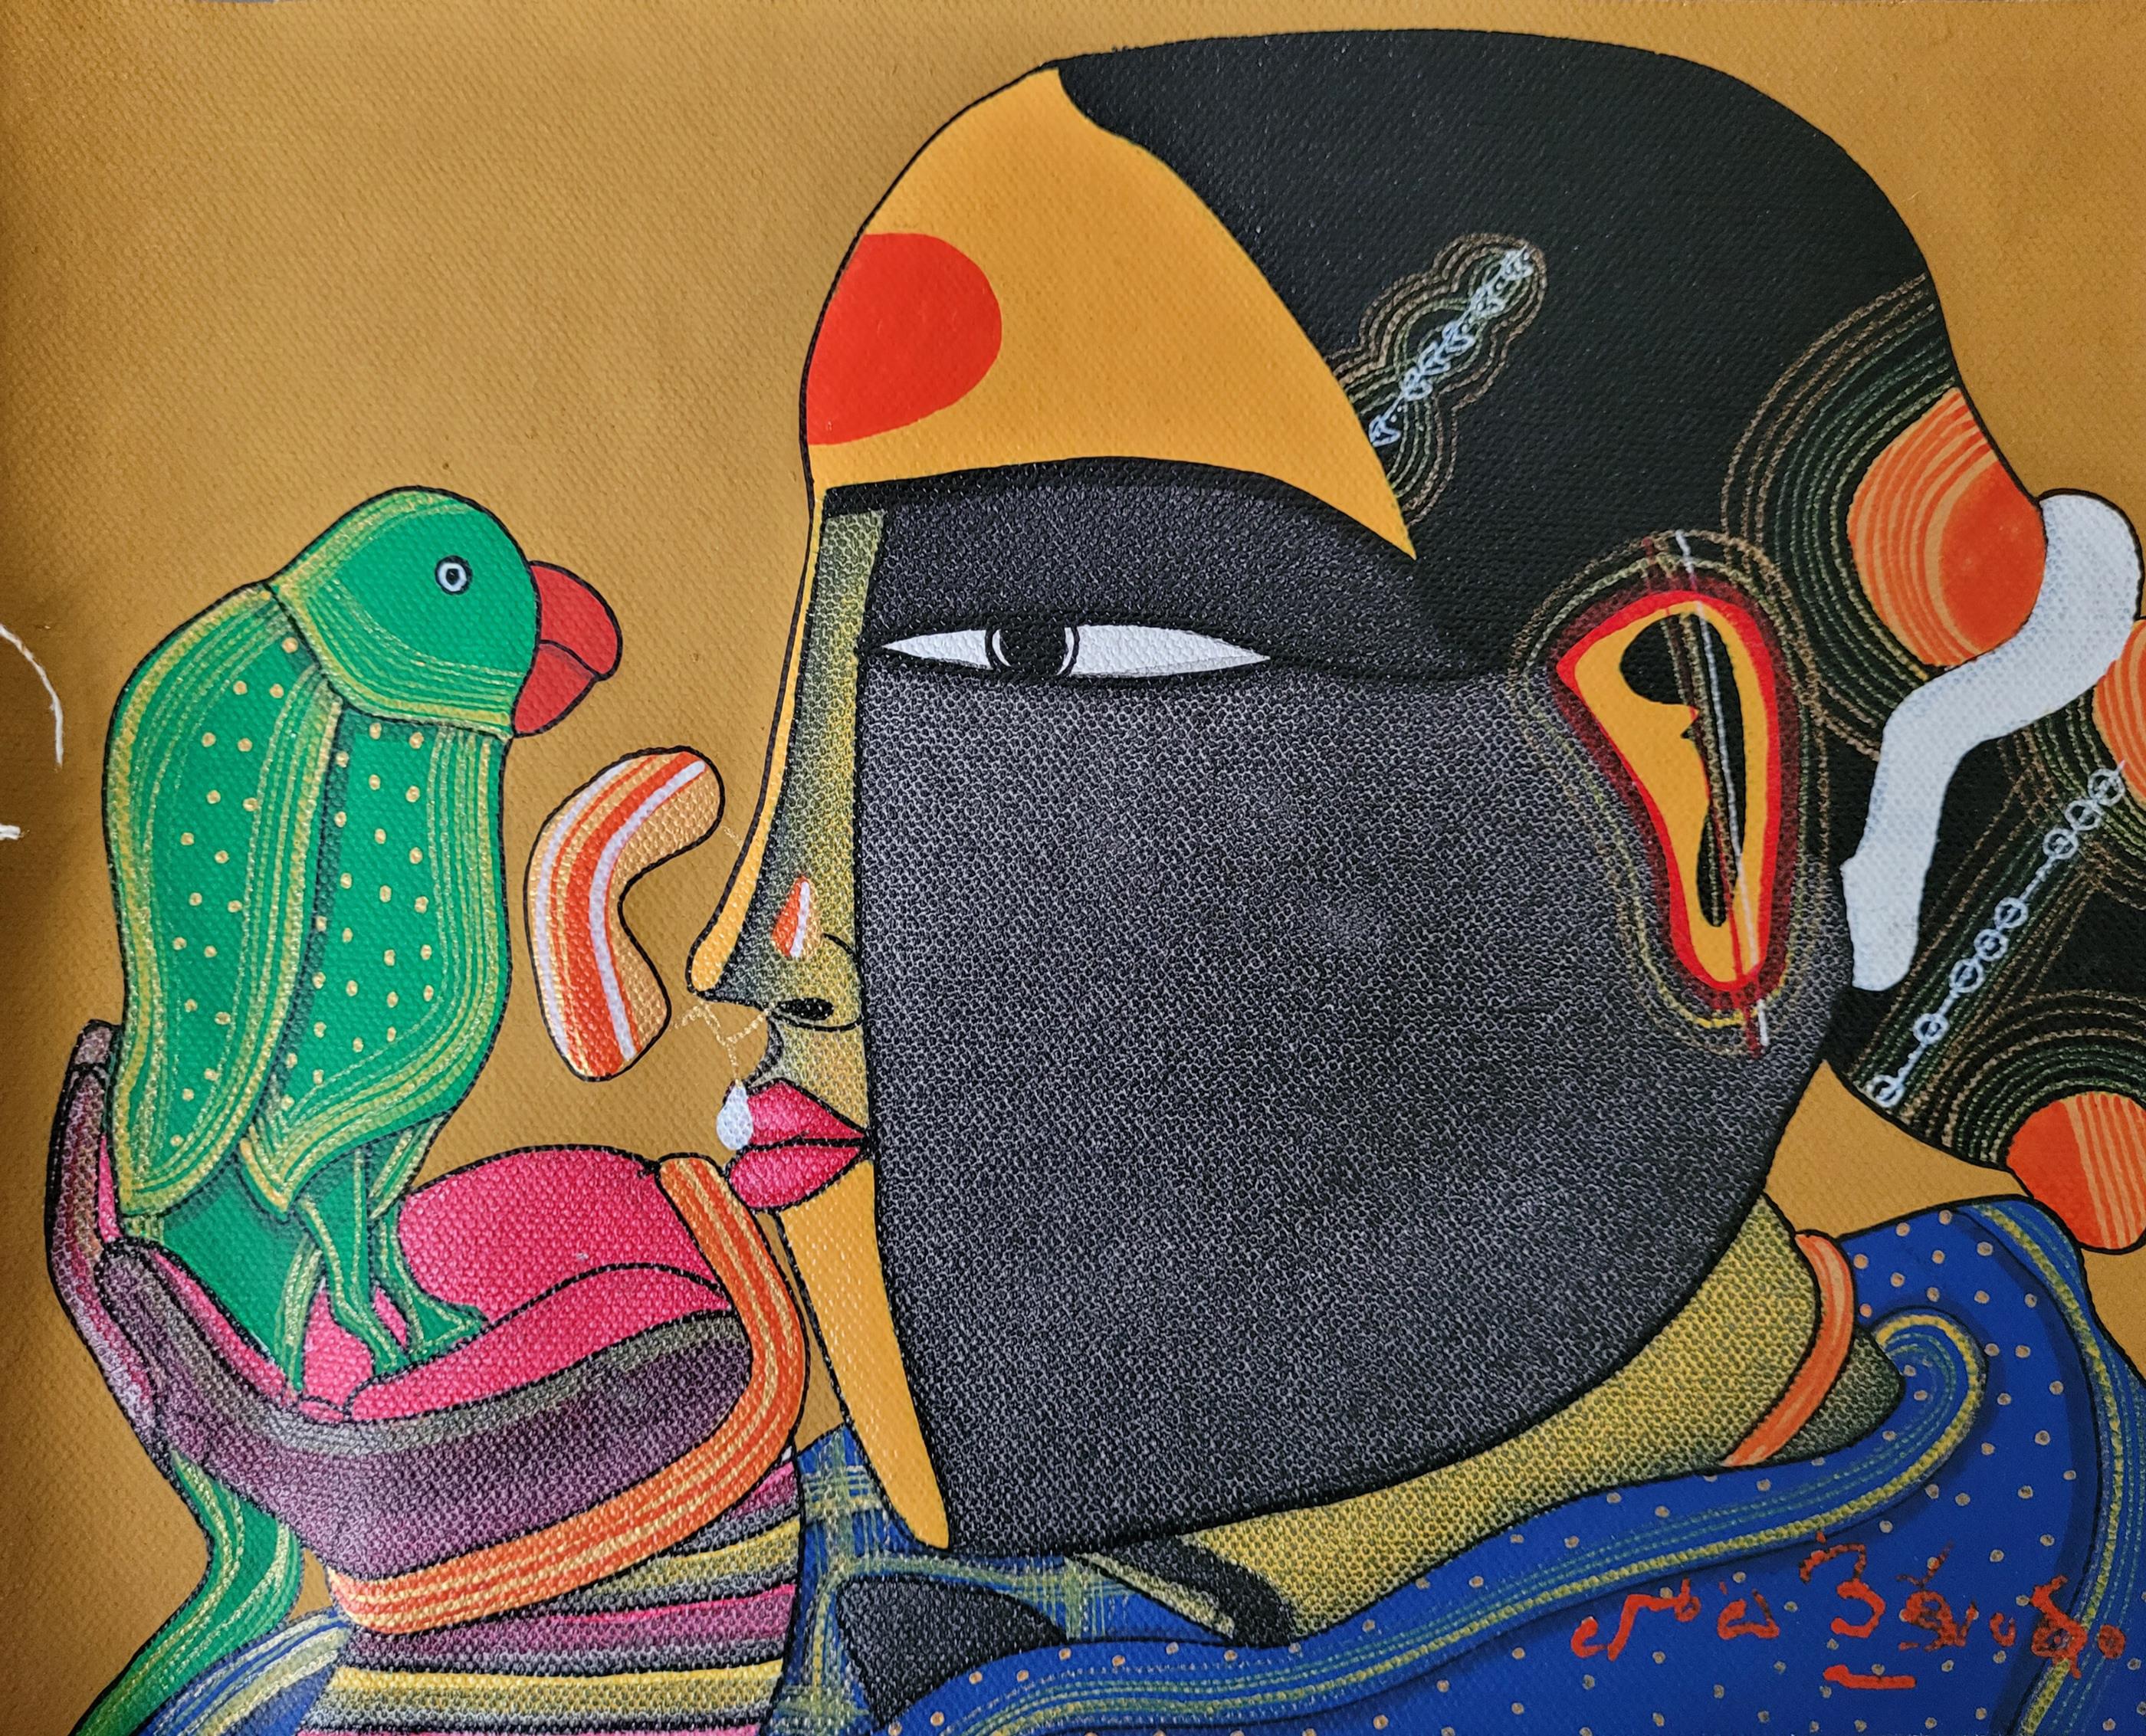 Thota Vaikuntam, Untitled (Lot 16; Image courtesy of Saffronart)